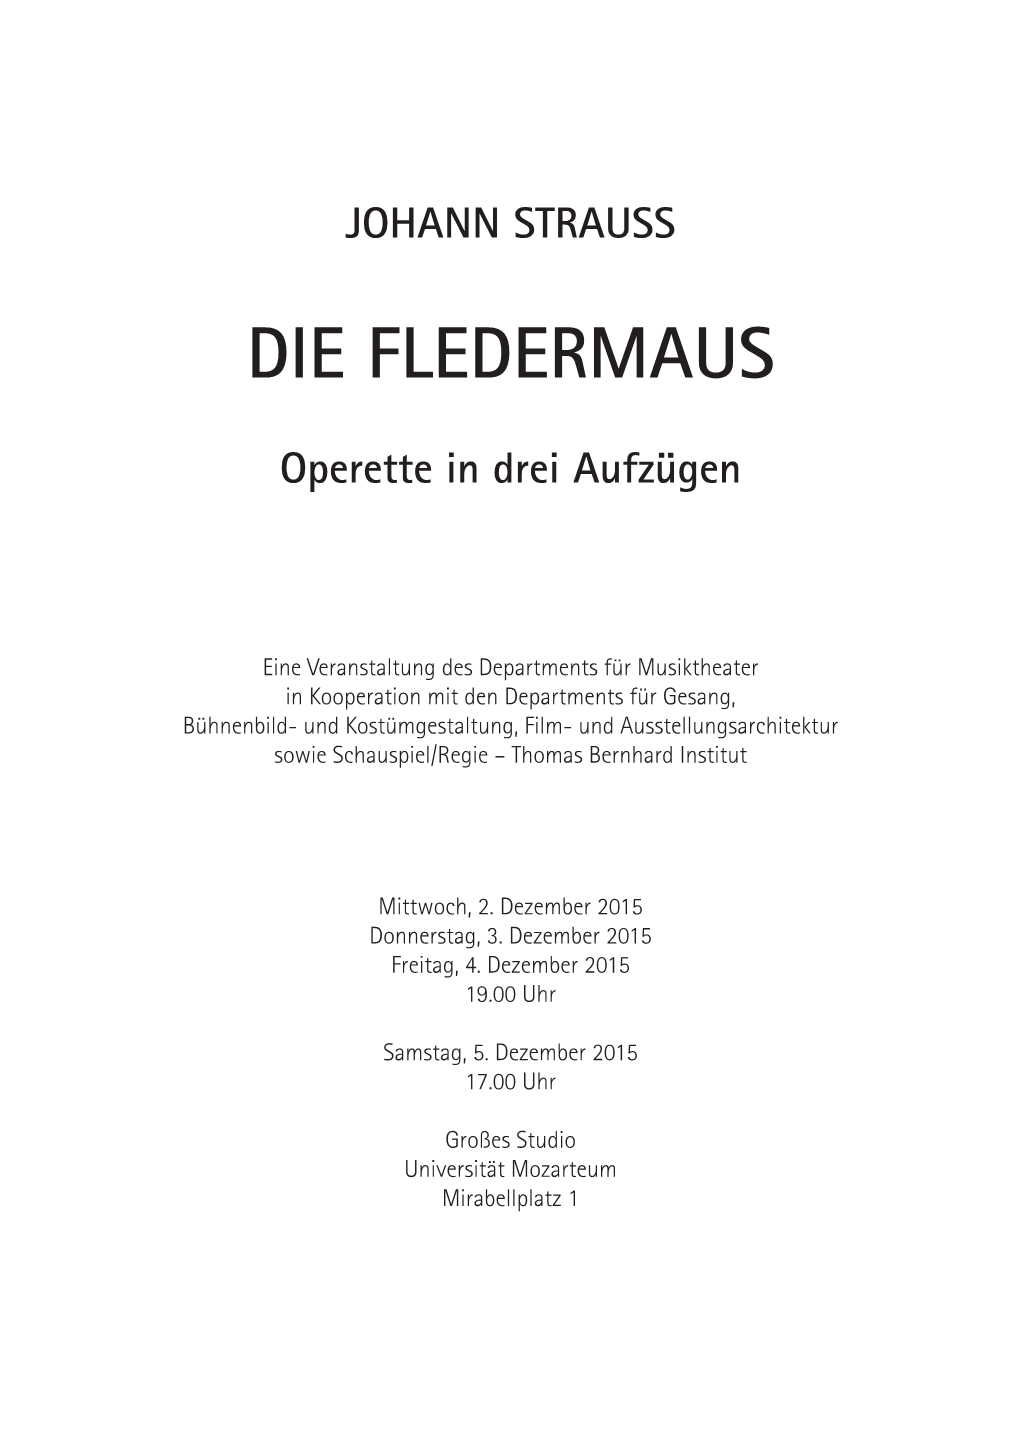 Johann Strauss: "Die Fledermaus"